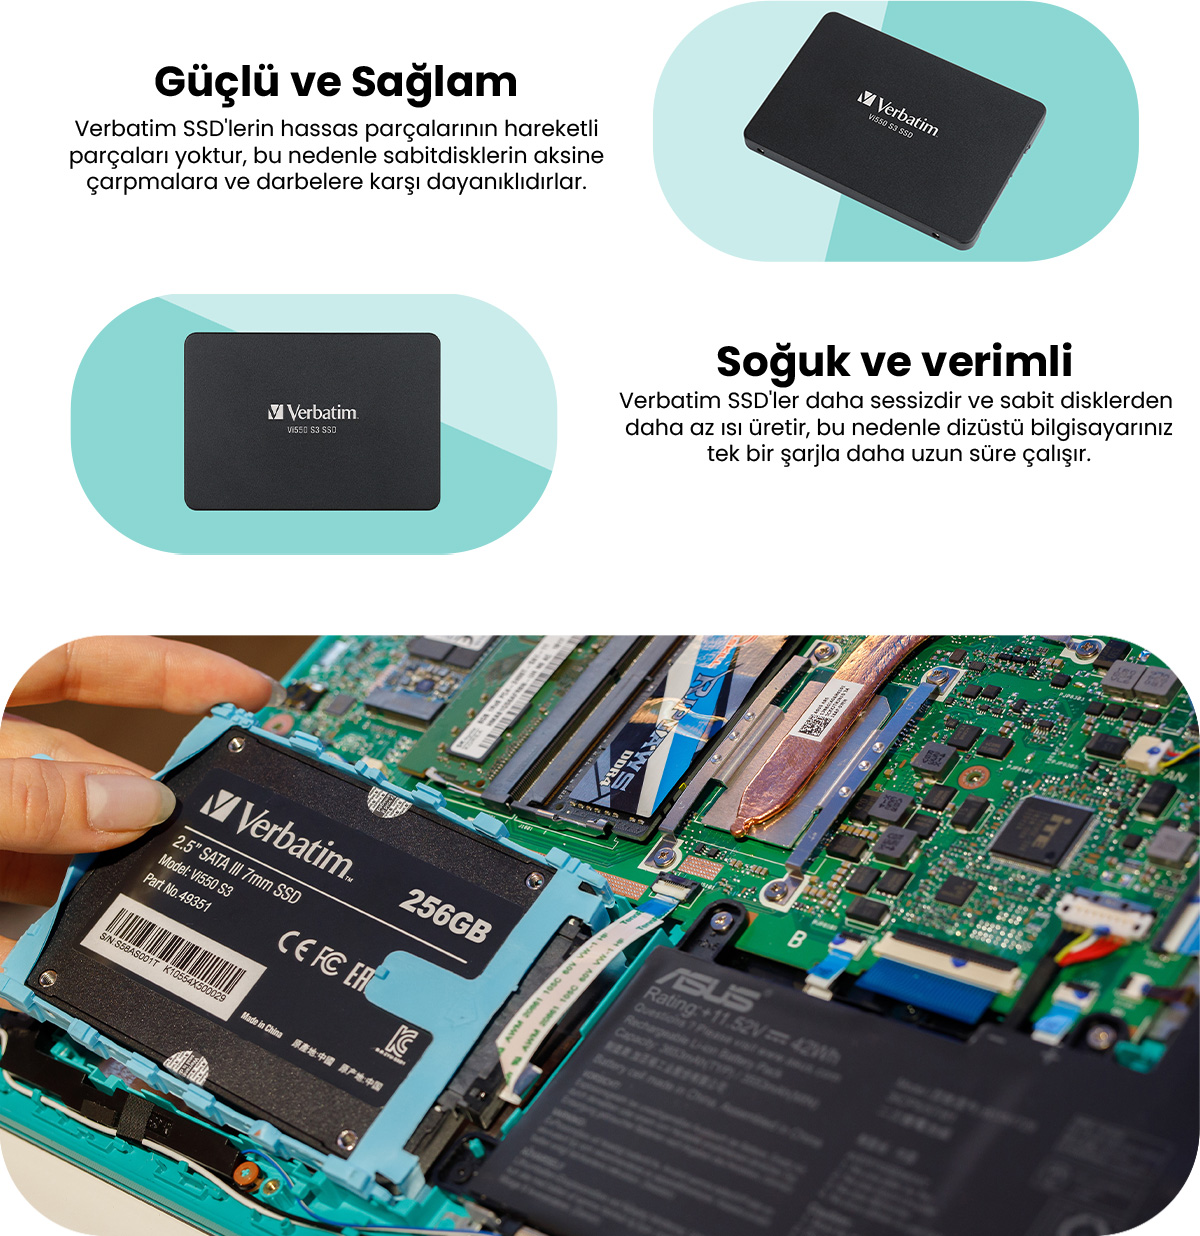 Verbatim VI550 S3 512GB 520MB-500MB/SN Sata-3 2.5\' SSD Fiyatı